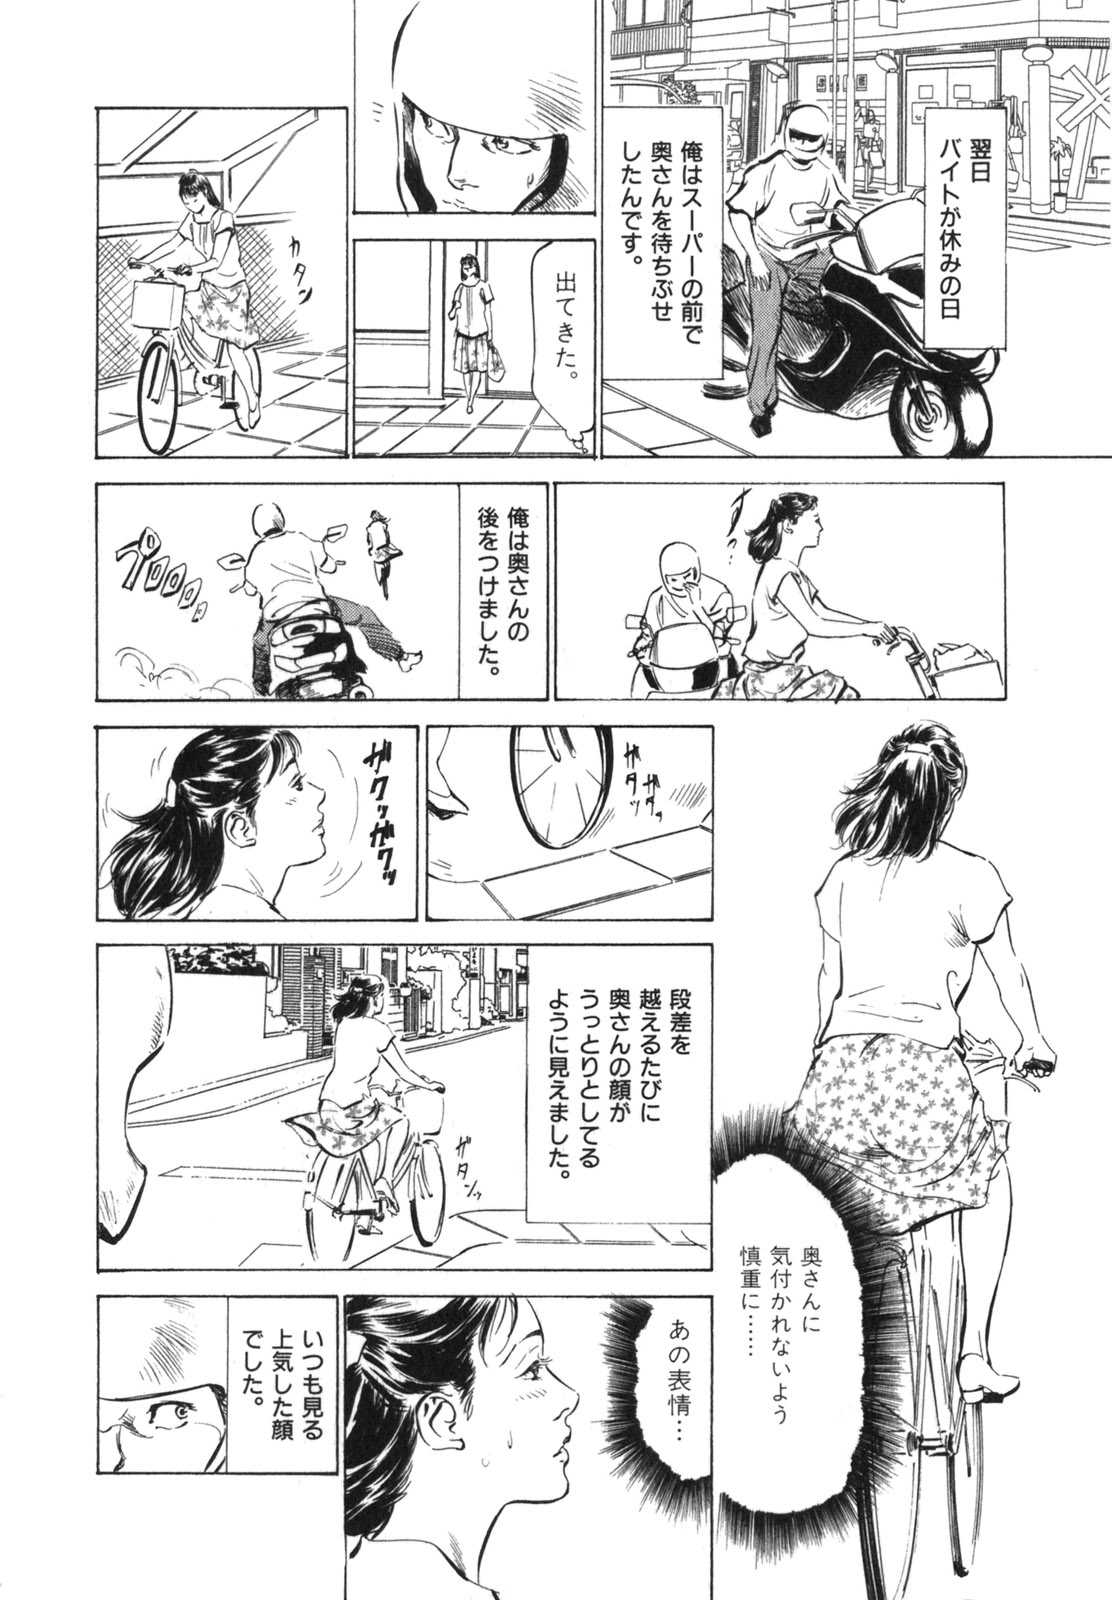 true Stories of Erotic Experiences 3 [Hazuki Kaoru] (J) 